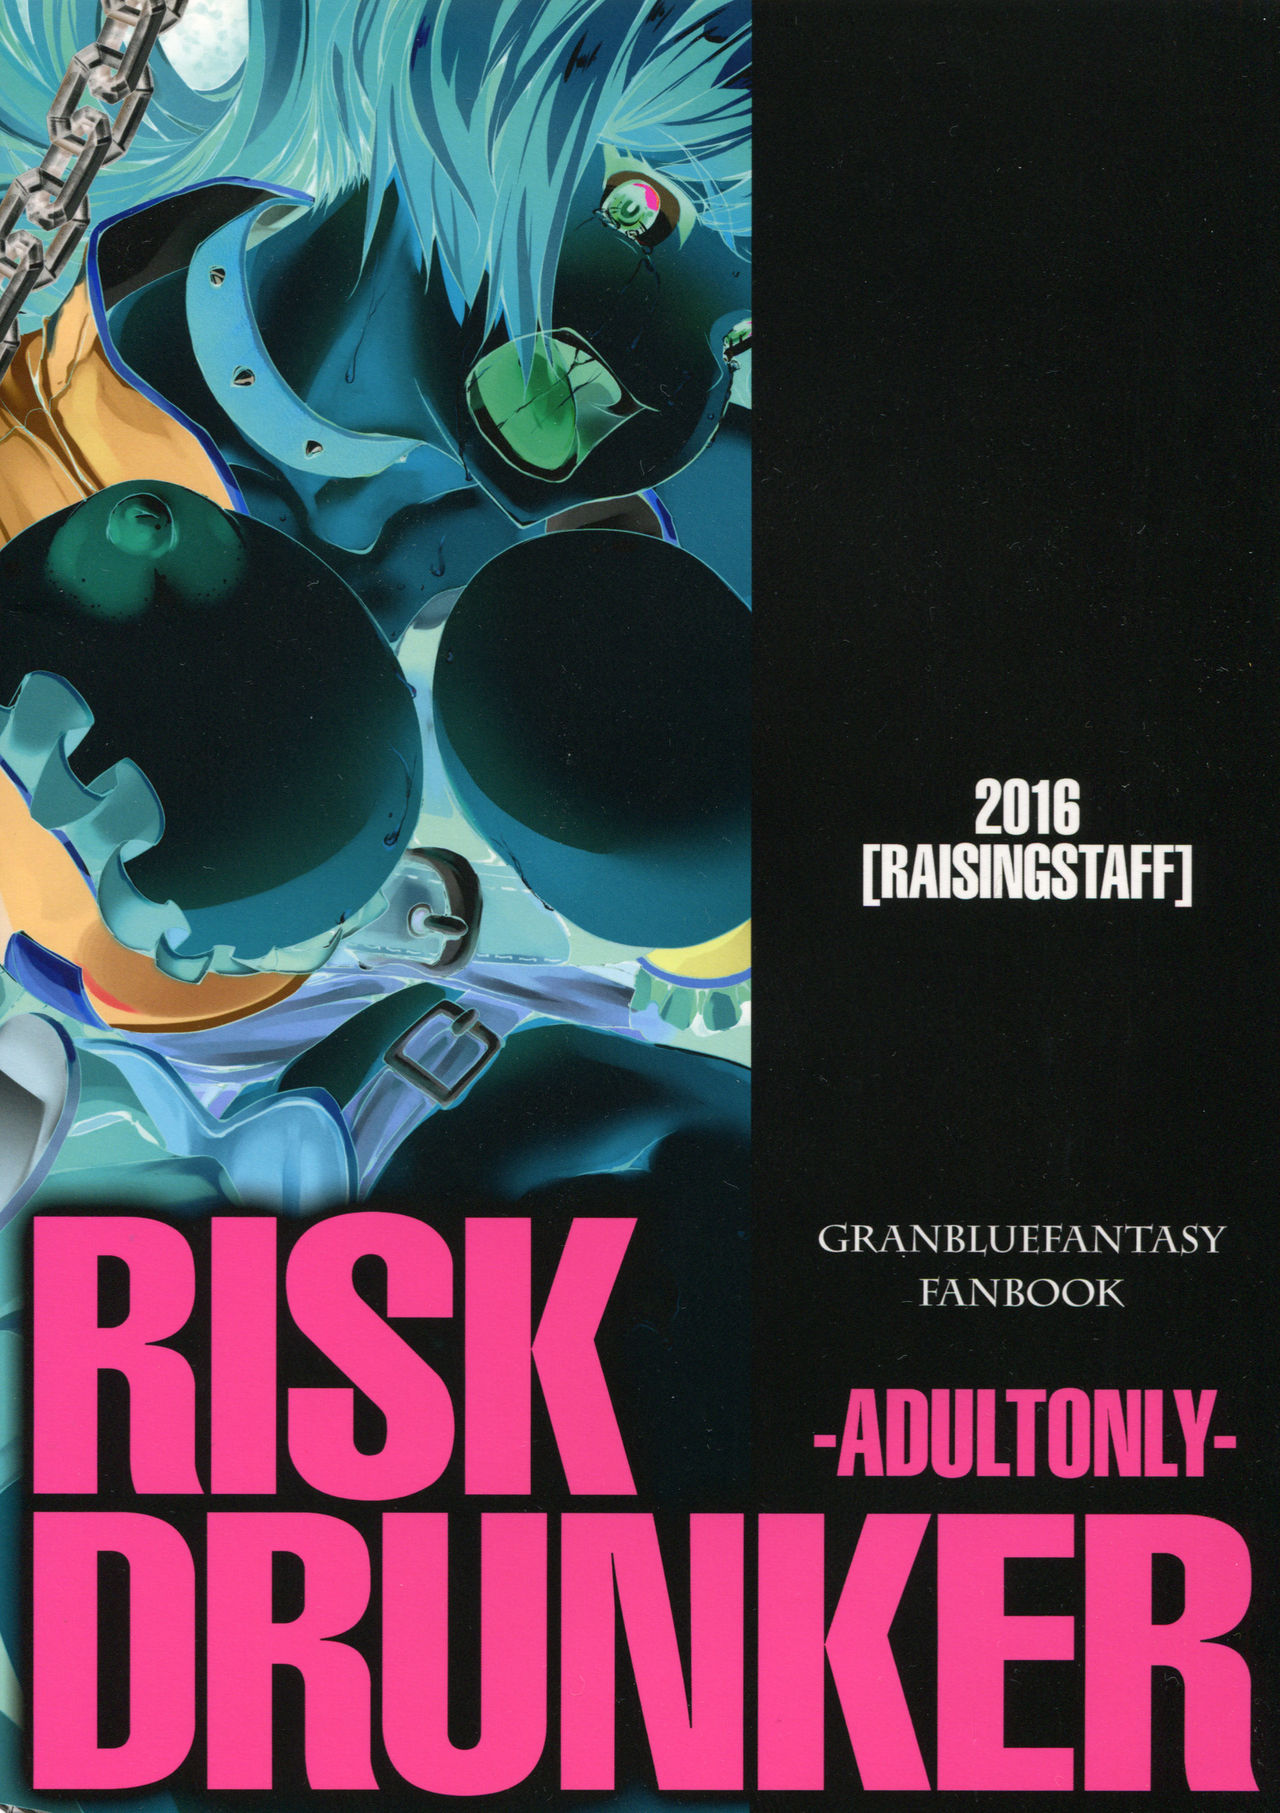 (Fata Grande Kikuusai 2) [Raising Staff (Saegusa Mutsumi)] RISK DRUNKER (Granblue Fantasy) (ファータグランデ騎空祭2) [Raising Staff (さえぐさ睦)] RISK DRUNKER (グランブルーファンタジー)